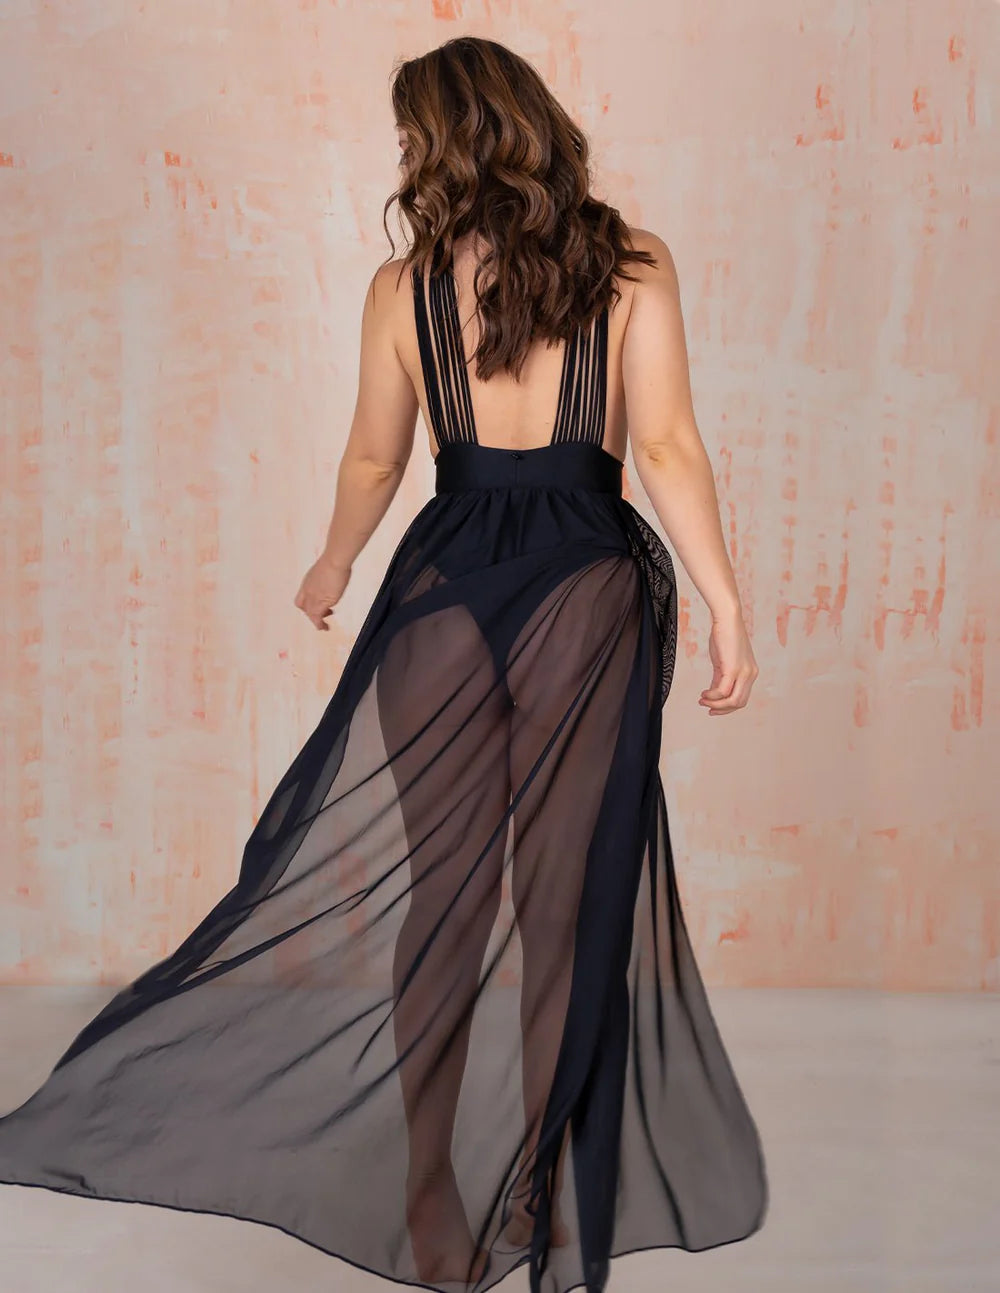 Coralito Black dress